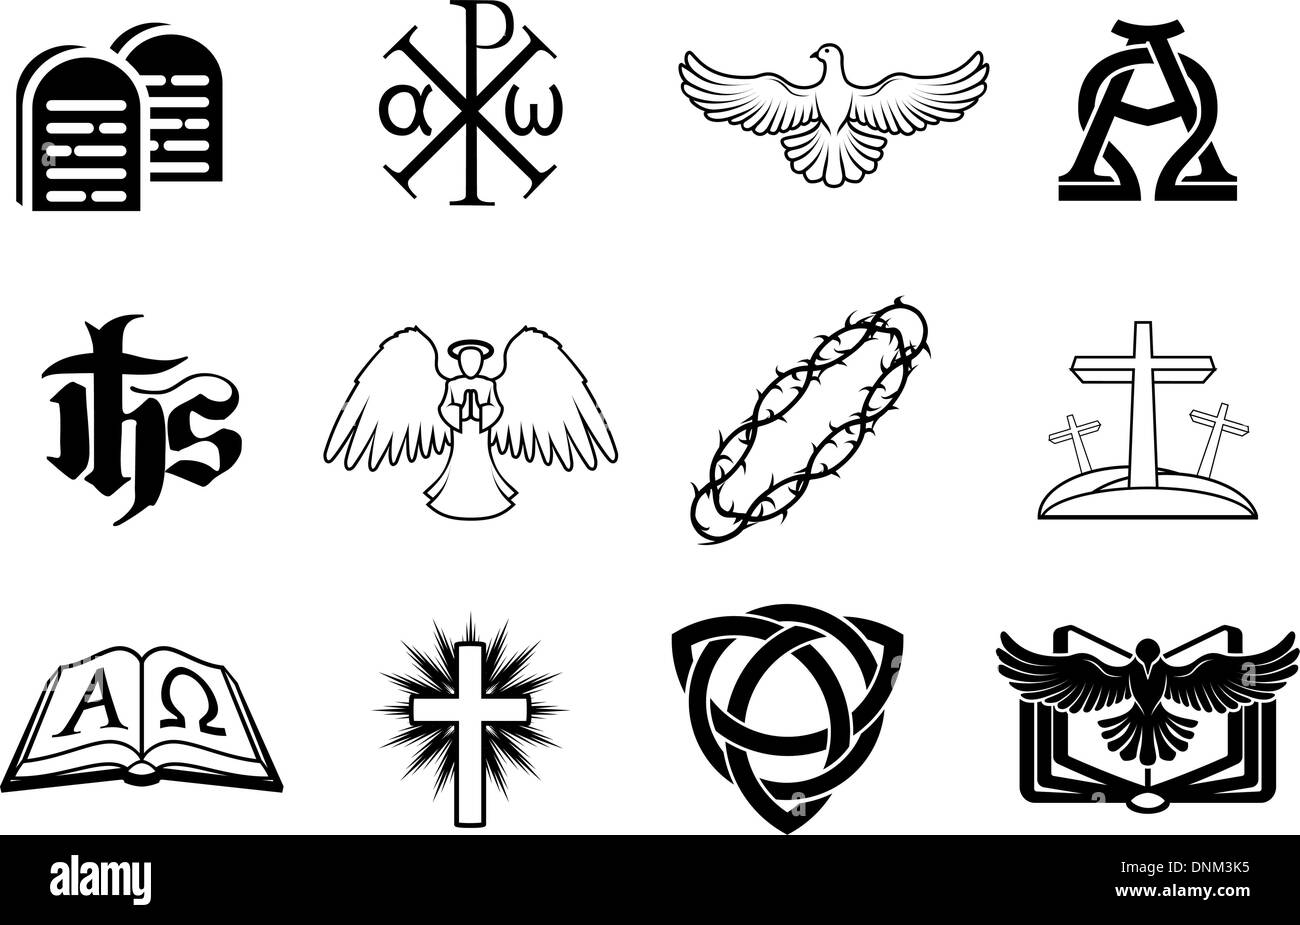 Un ensemble d'icônes chrétiennes notamment angel, Dove, alpha omega, Chi Ro et beaucoup d'autres Illustration de Vecteur